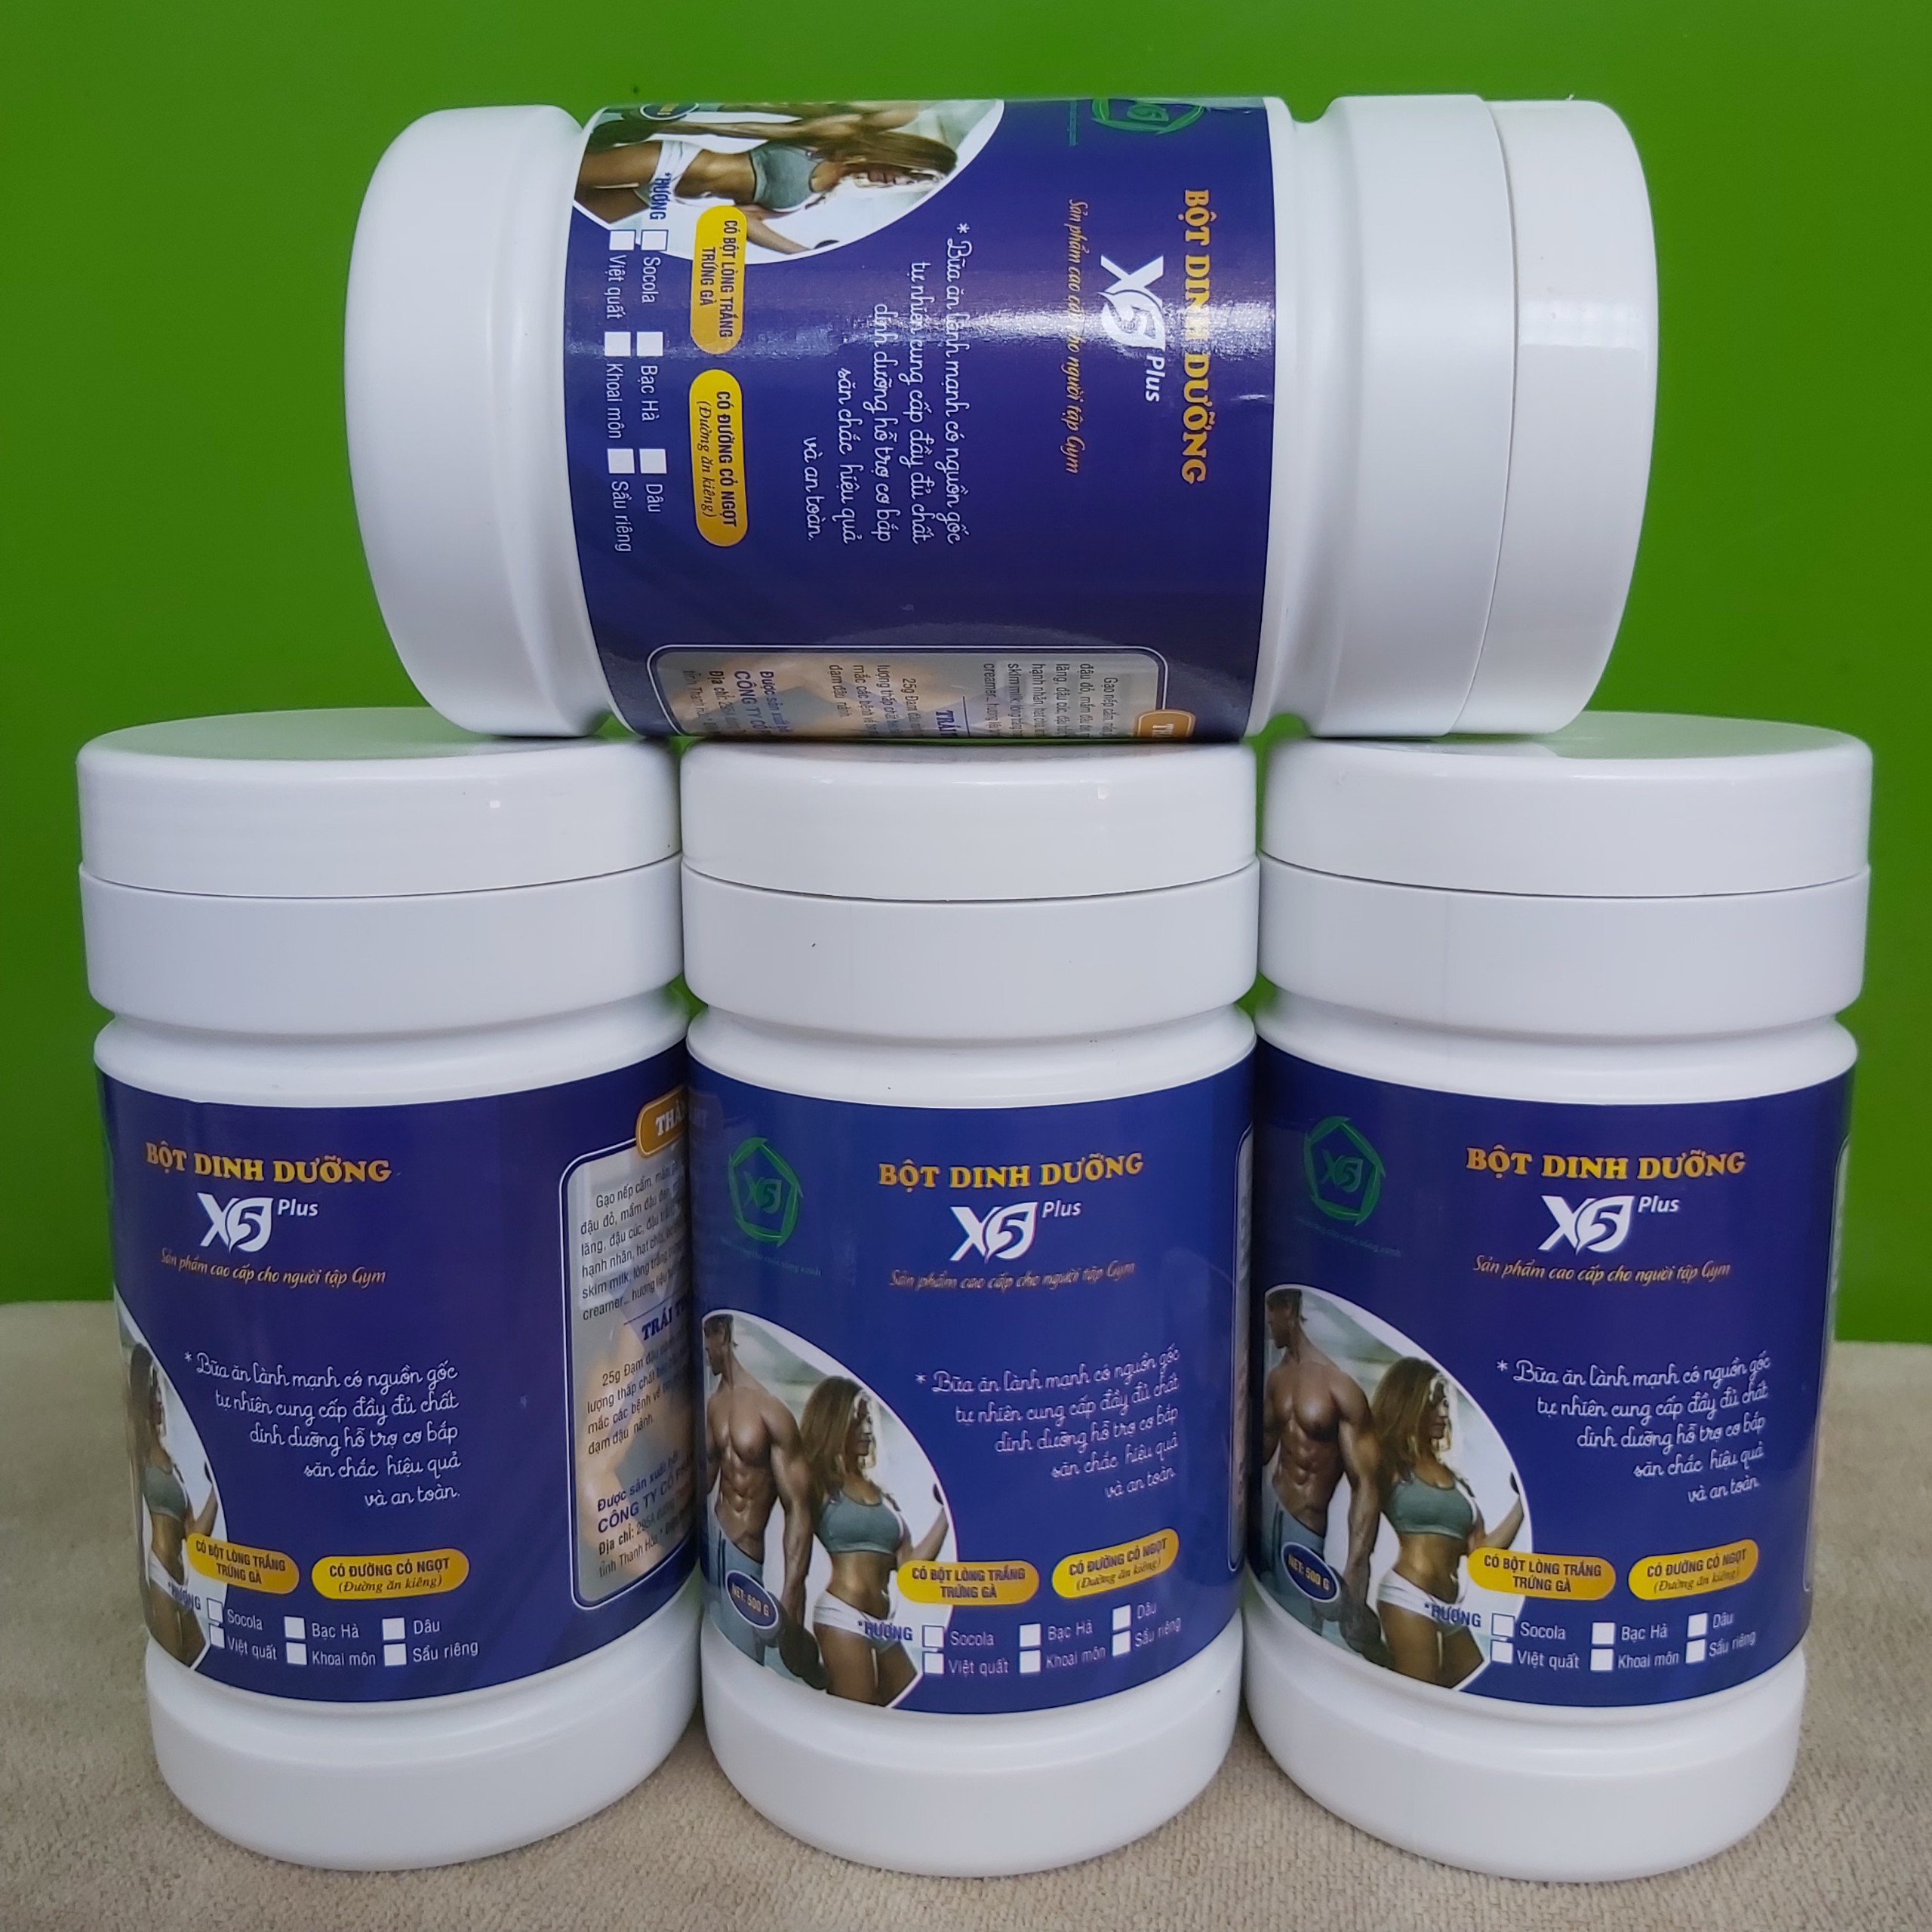 Combo 4 hộp bột ngũ cốc dinh dưỡng X5 dành cho người tập gym có whey, đạm đậu nành, Giúp Tăng Cơ, Giảm Mỡ (Ngũ cốc tập Gym- thể thao)